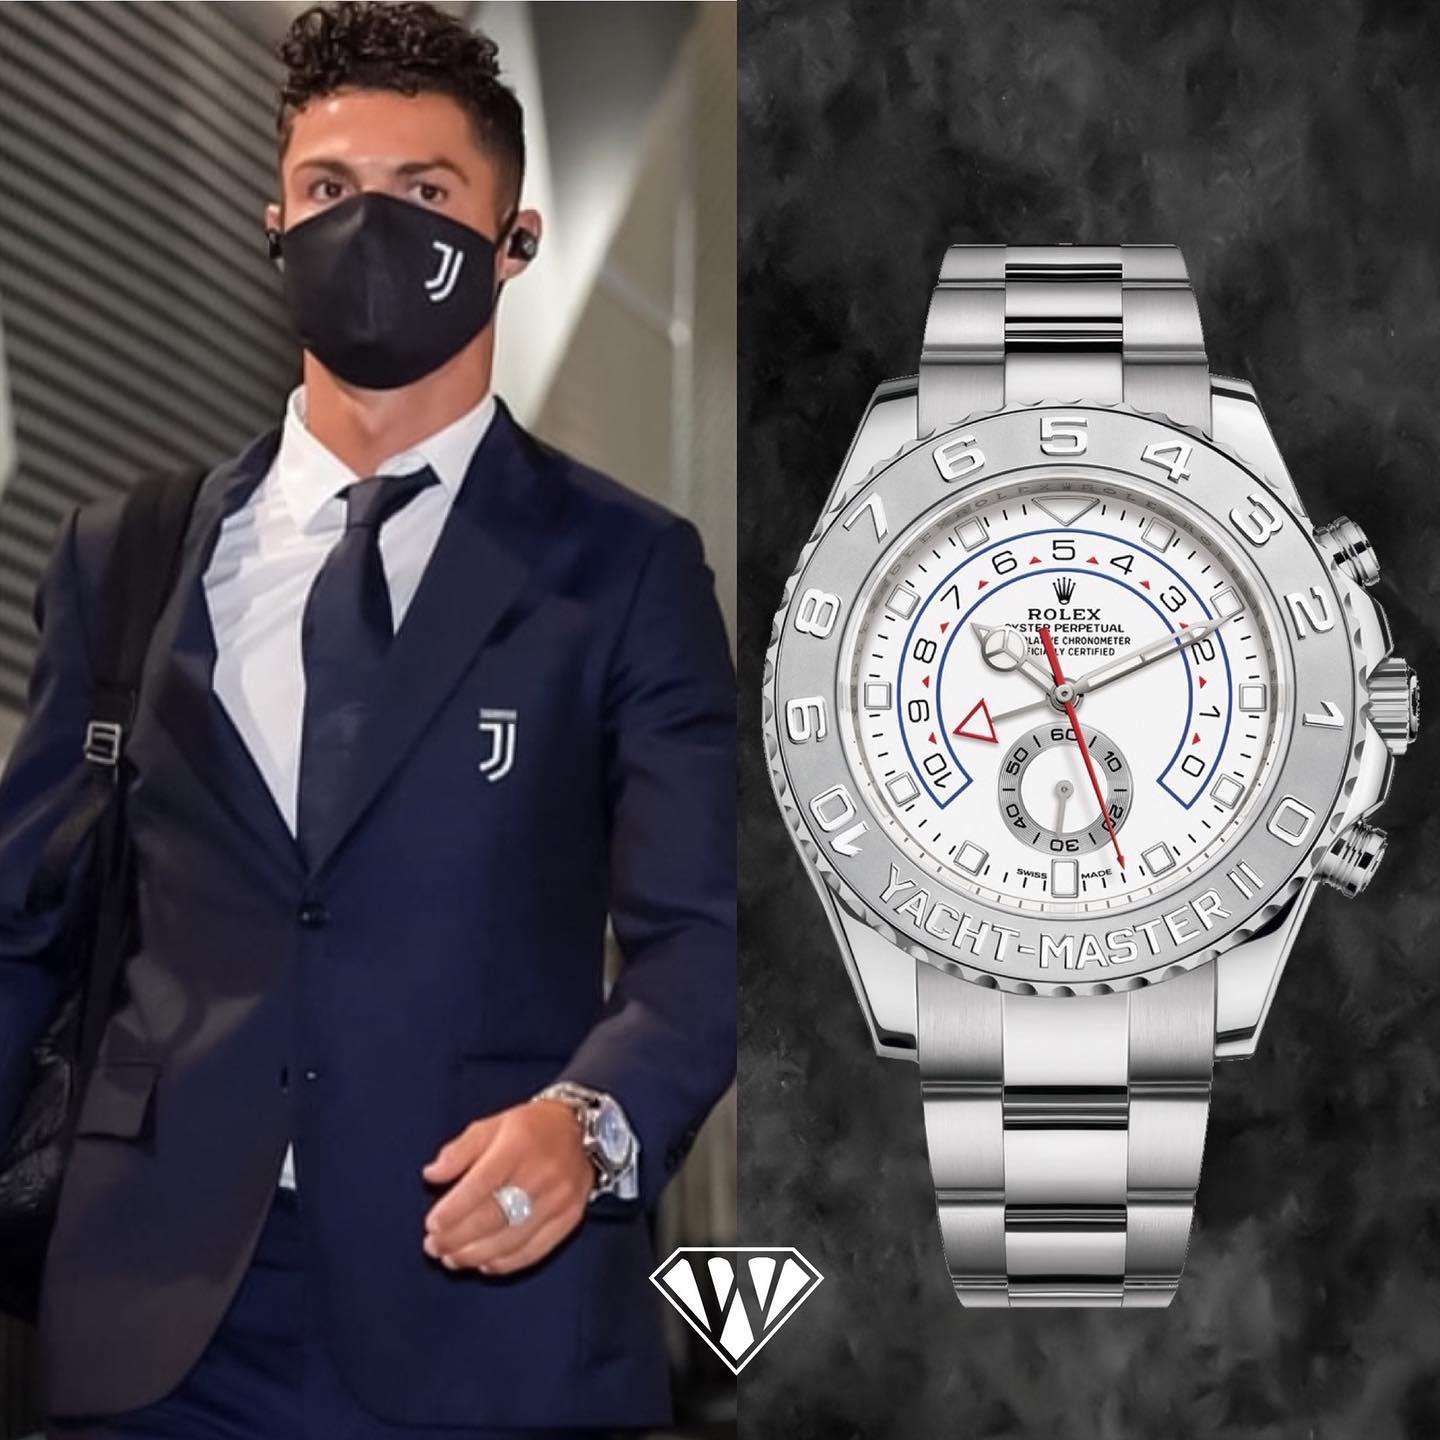 Ronaldo là tín đồ của đồng hồ Rolex. Anh sở hữu 2 phiên bản Rolex Yatch-Master II bằng vàng và vàng trắng. Mỗi chiếc trị giá 48.000 USD (khoảng 1 tỷ đồng).